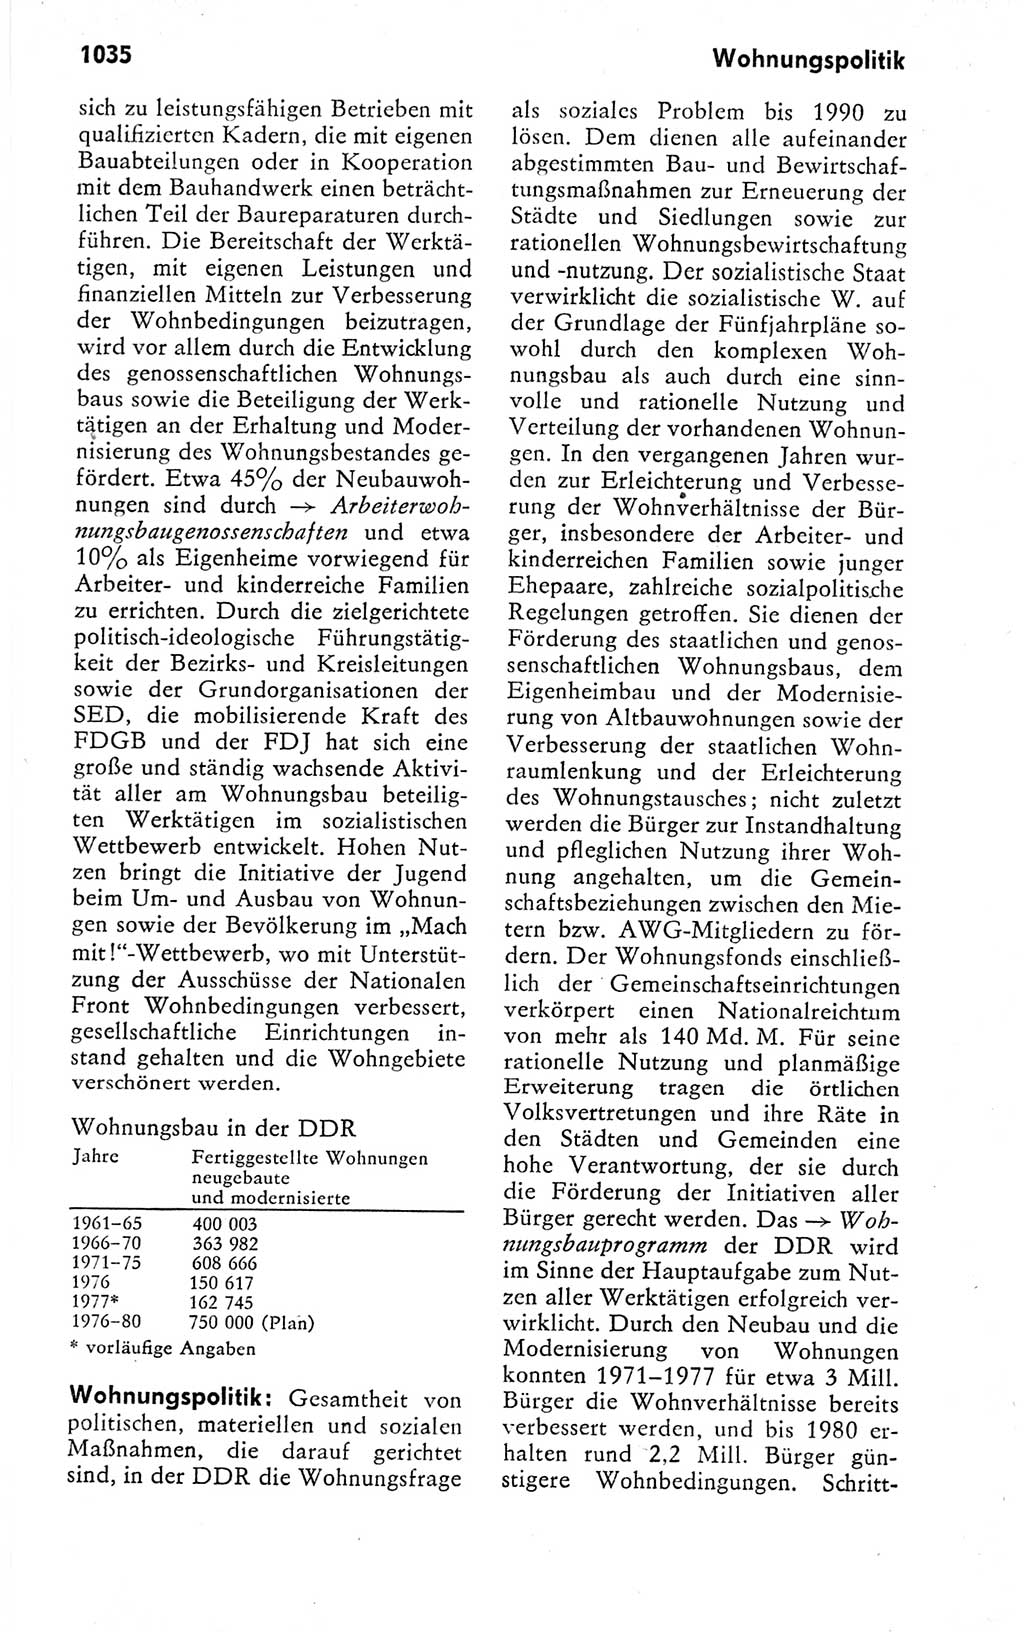 Kleines politisches Wörterbuch [Deutsche Demokratische Republik (DDR)] 1978, Seite 1035 (Kl. pol. Wb. DDR 1978, S. 1035)